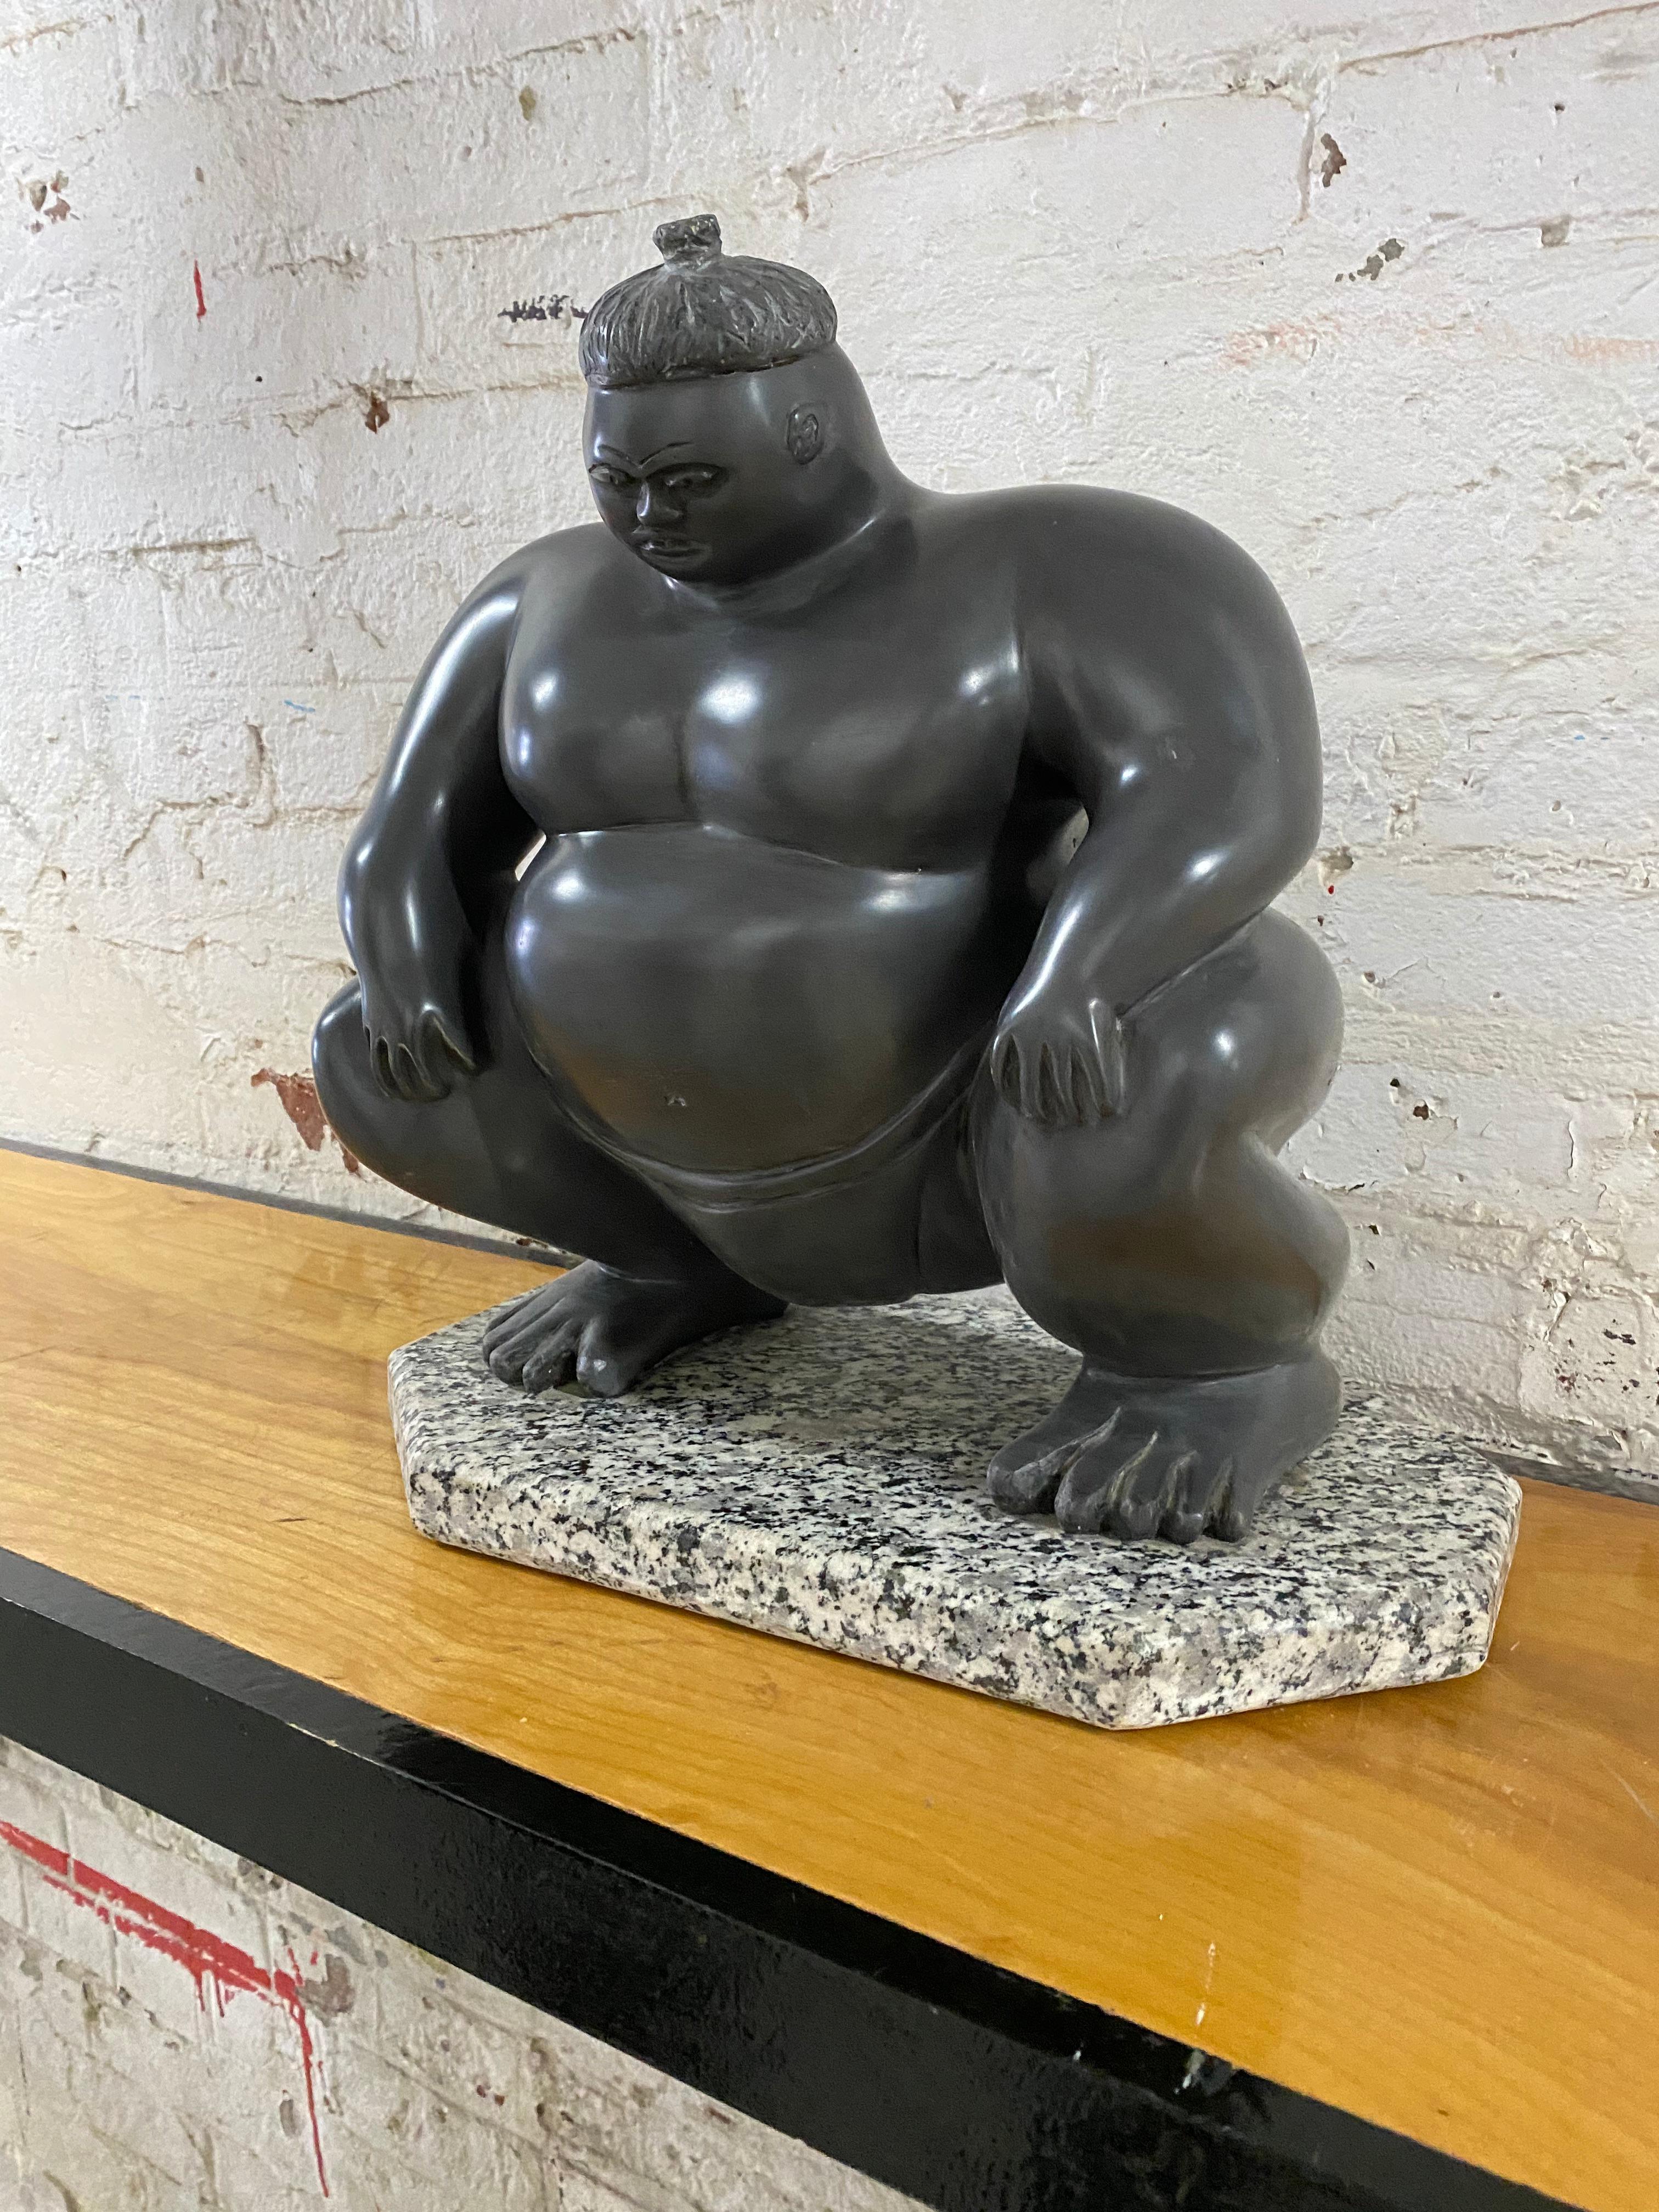 sumo wrestler statue